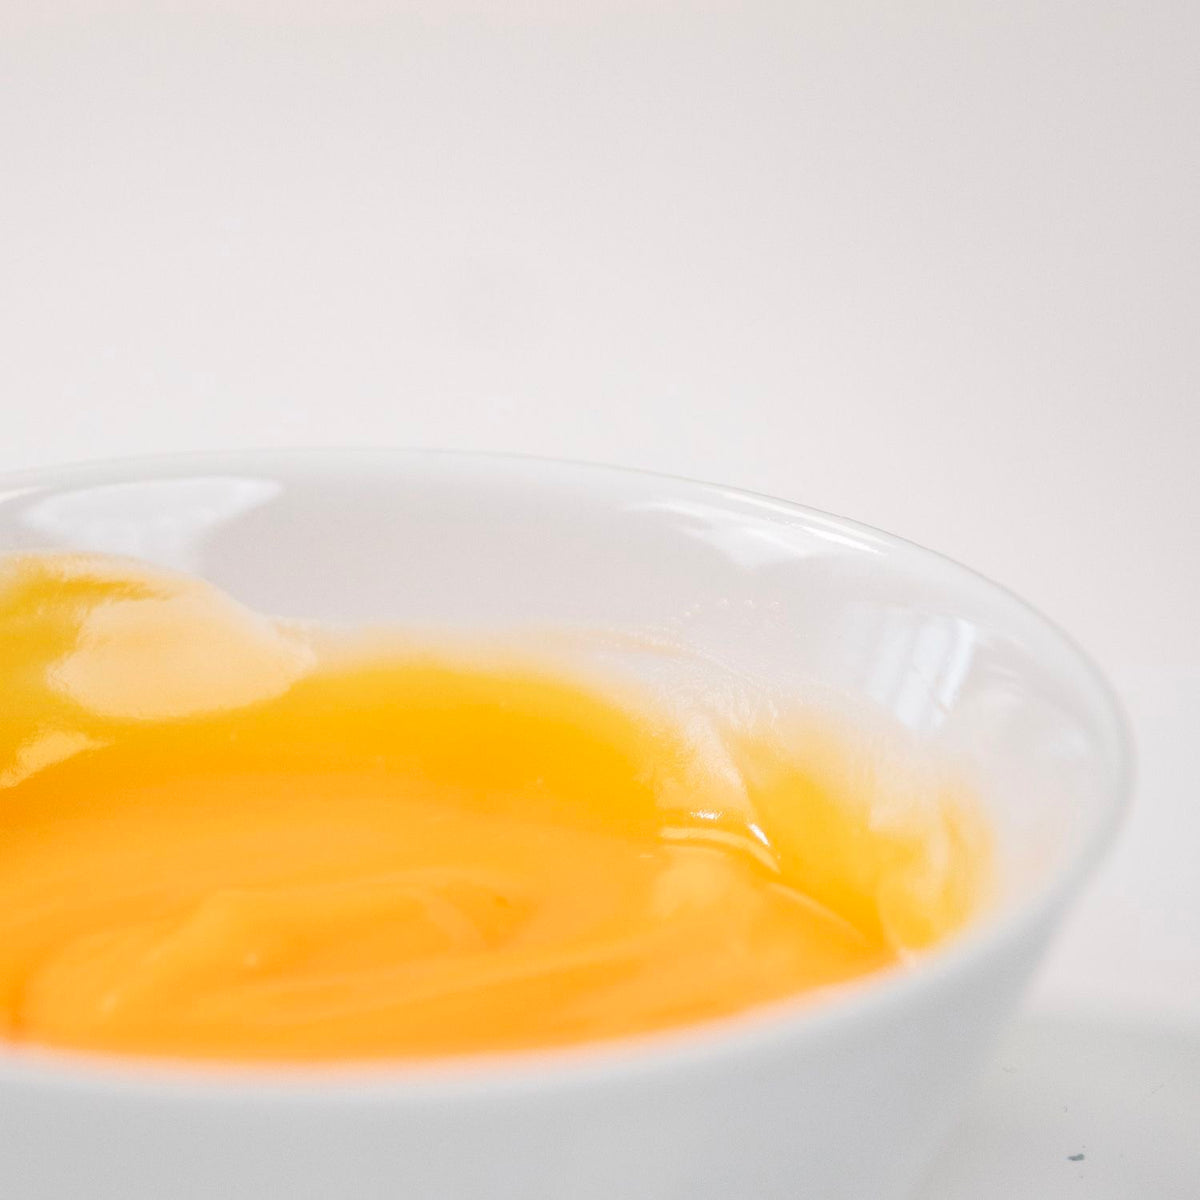 1kg Preparato in pasta concentrato al Limone per gelateria e pasticceria, AROMAINPASTA LIMONE